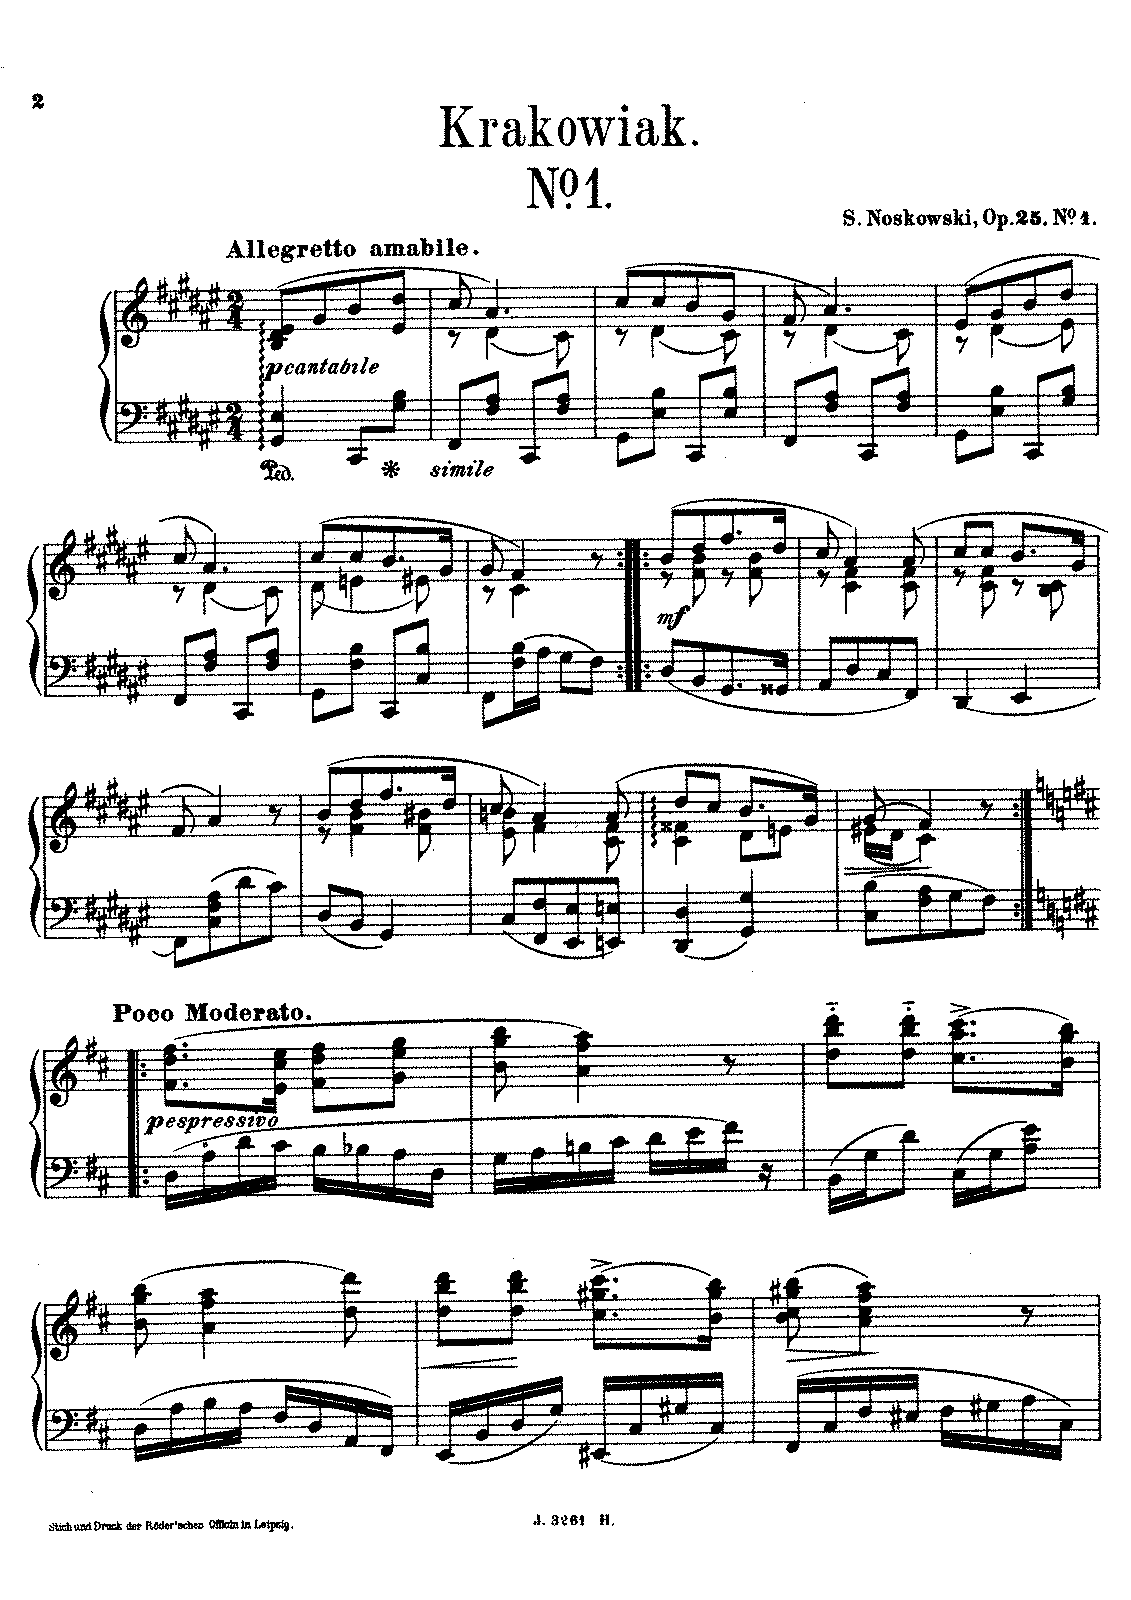 Krakowiaki, Op.25 (Noskowski, Zygmunt) - IMSLP